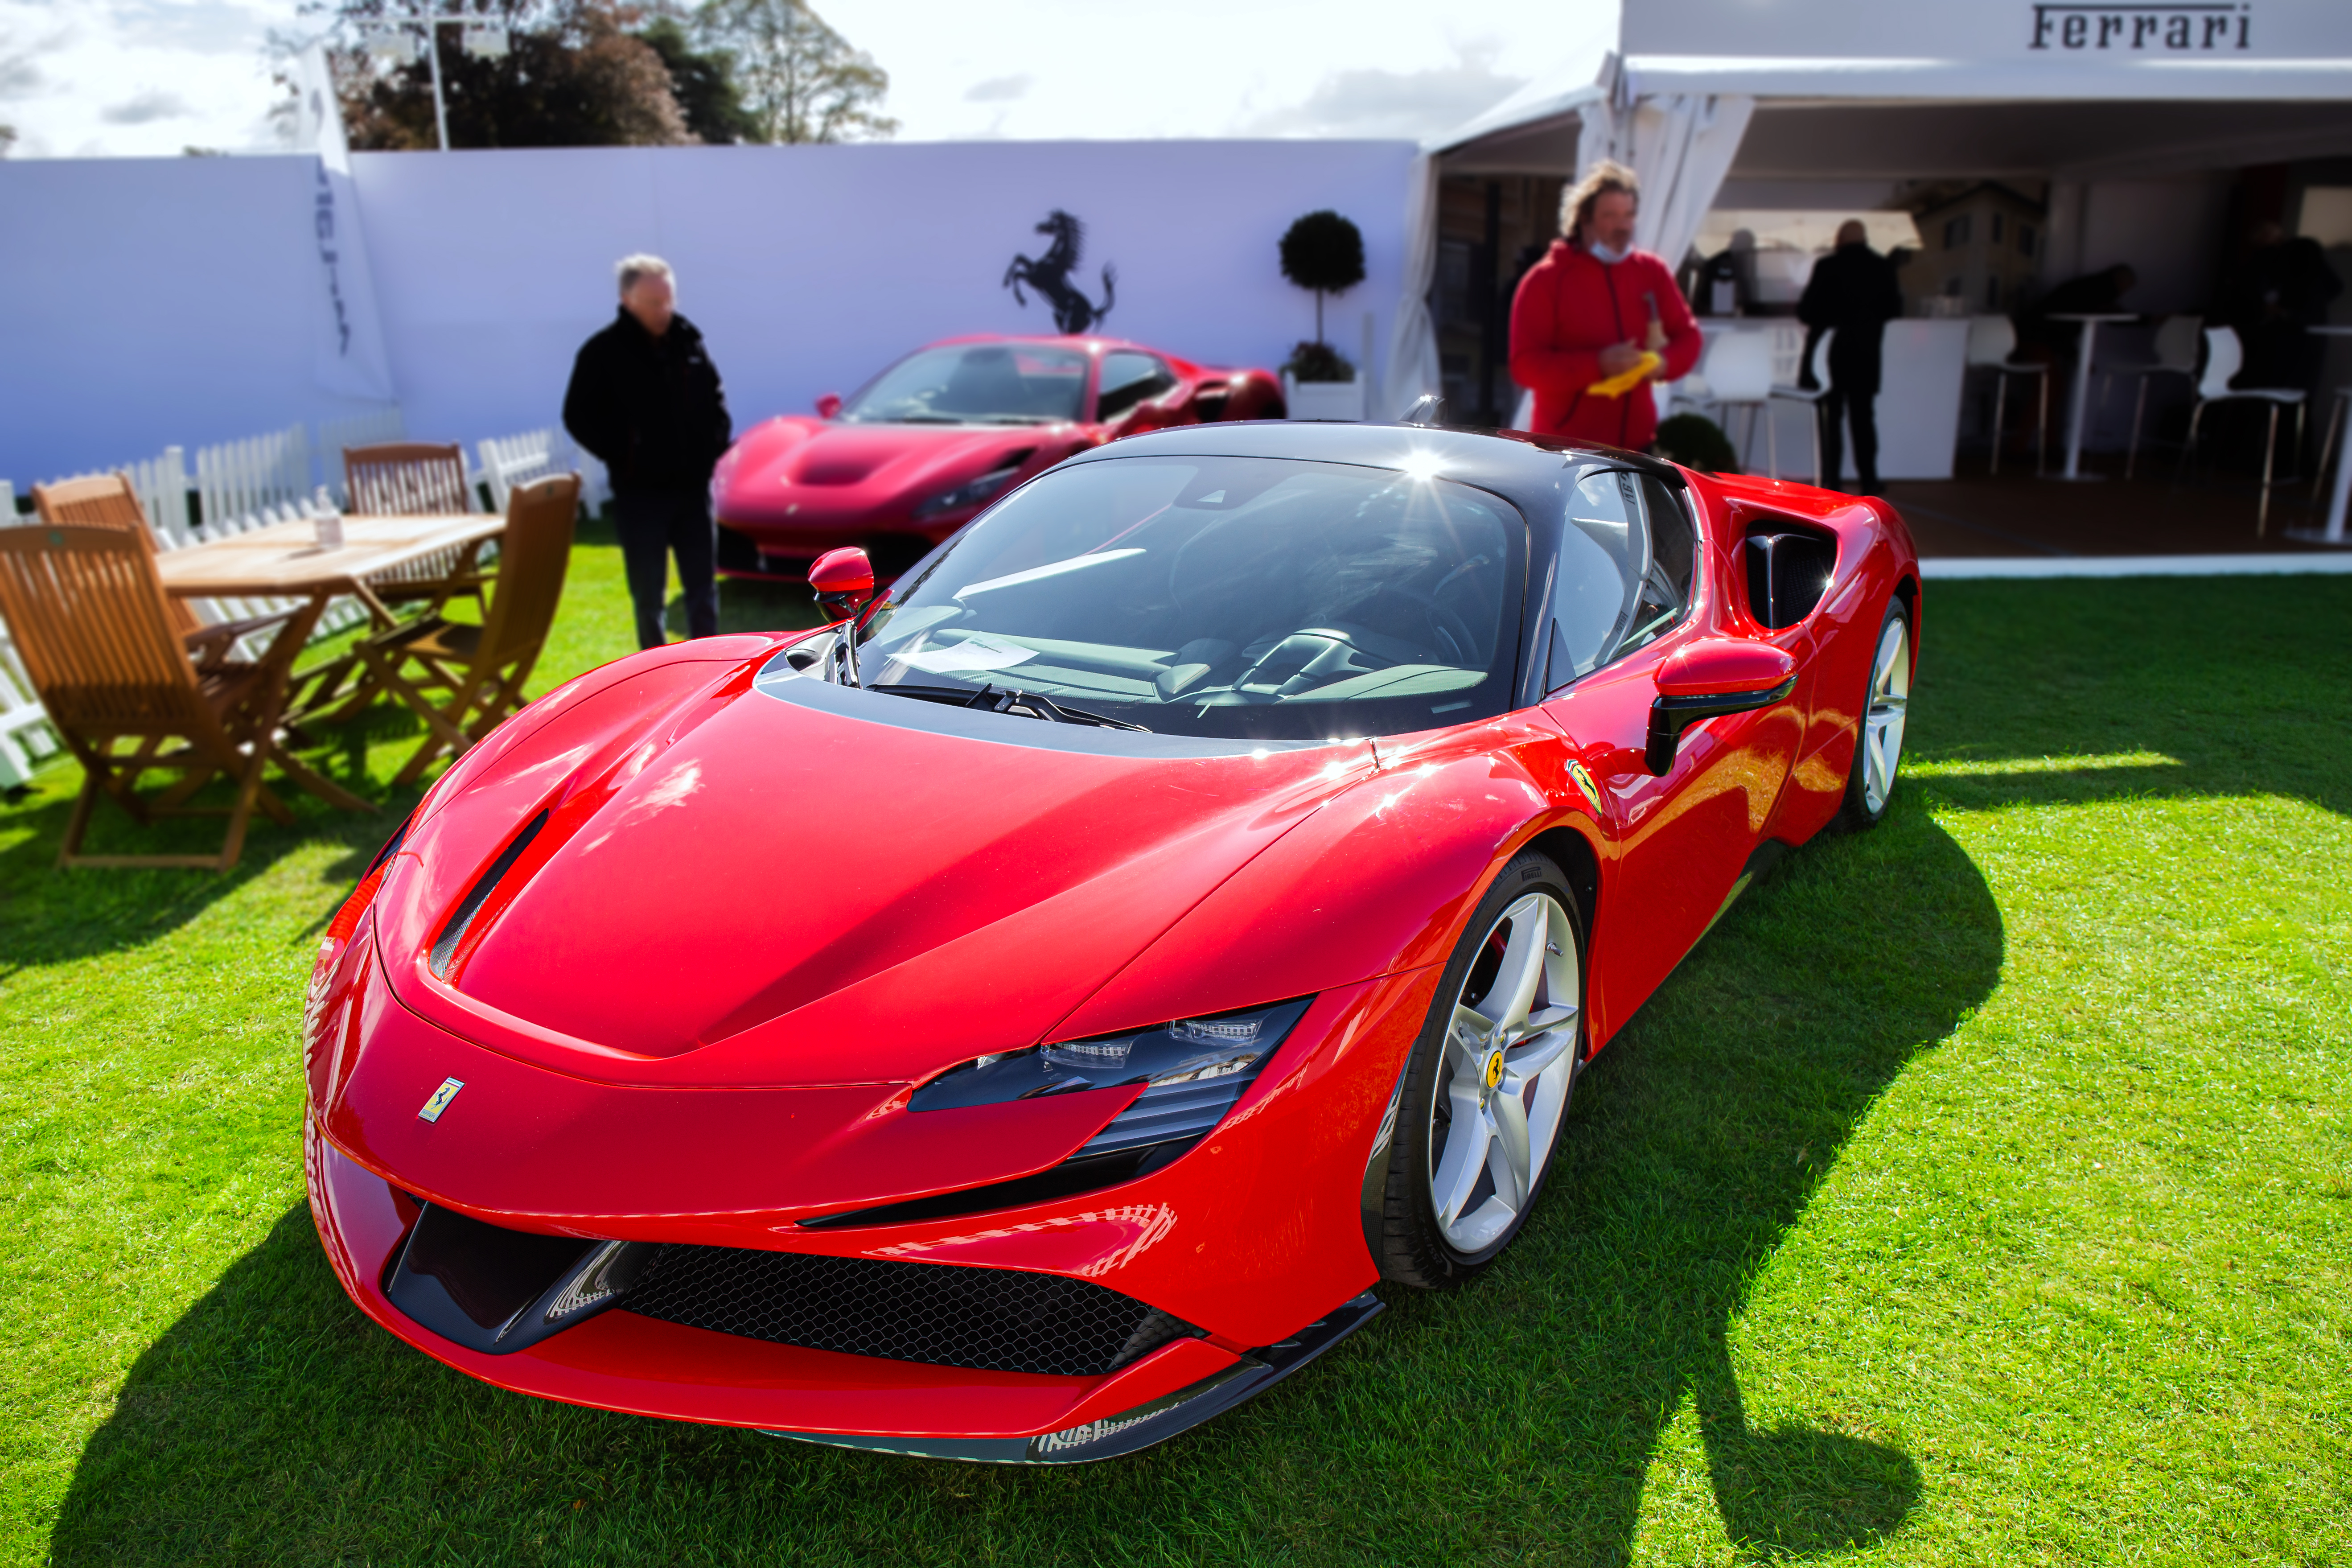 Ferrari's CEO promises an EV in 2025